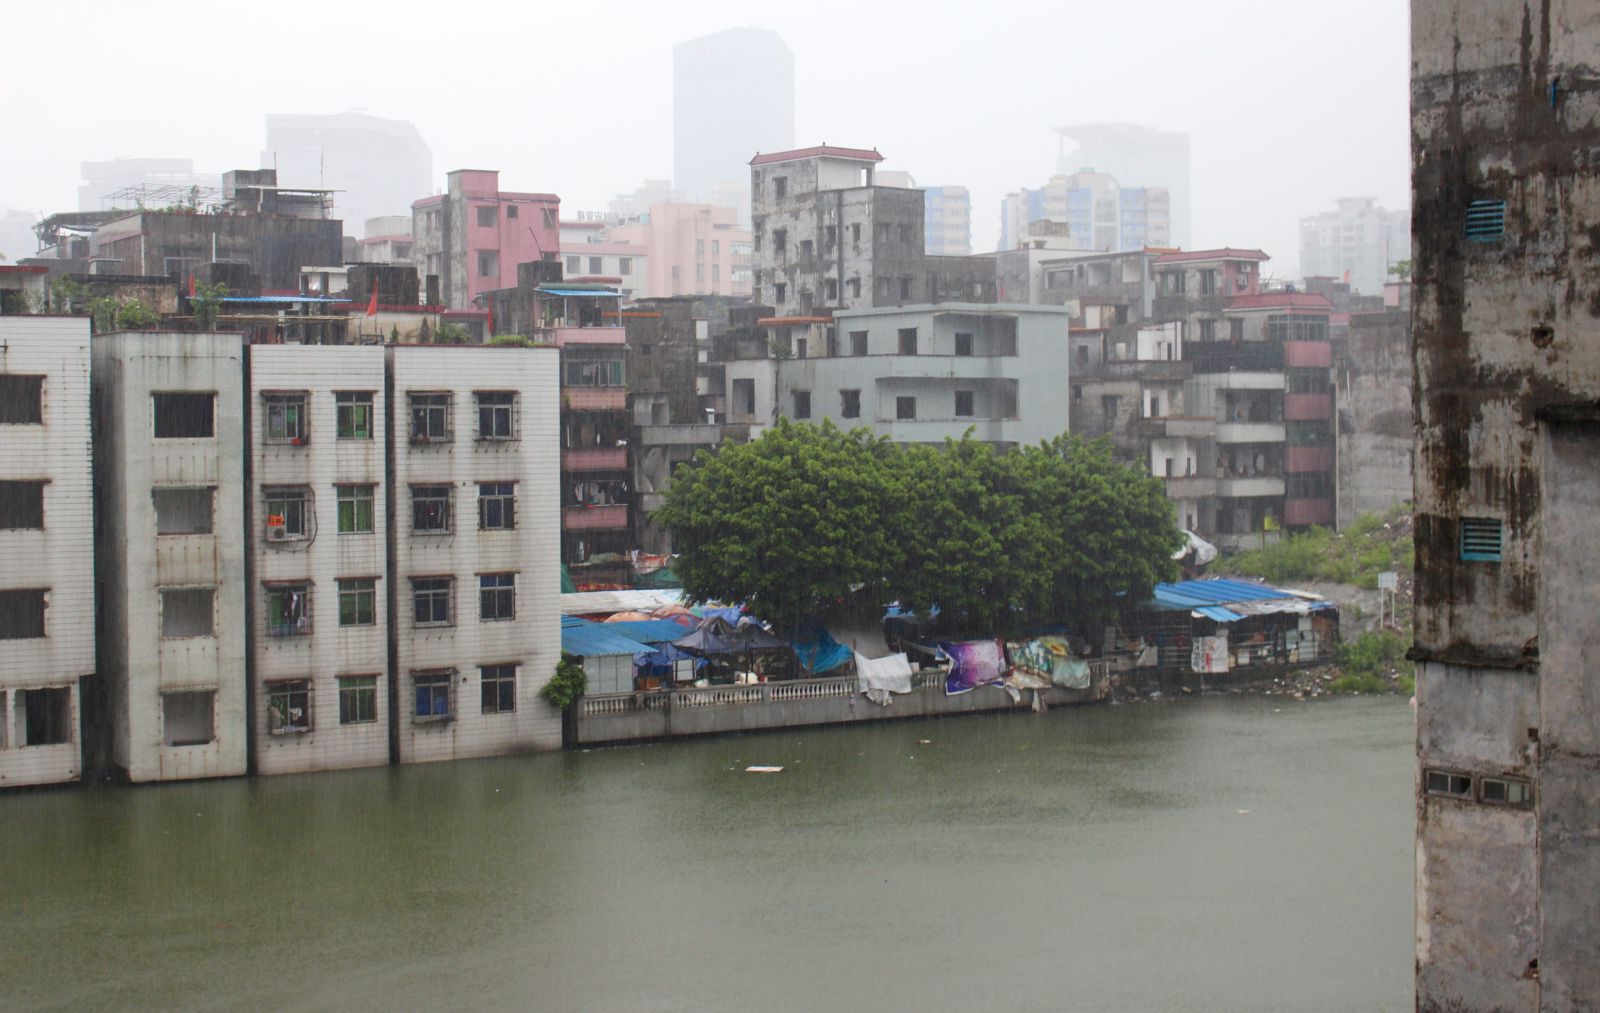 Xian Cun urban settlement.